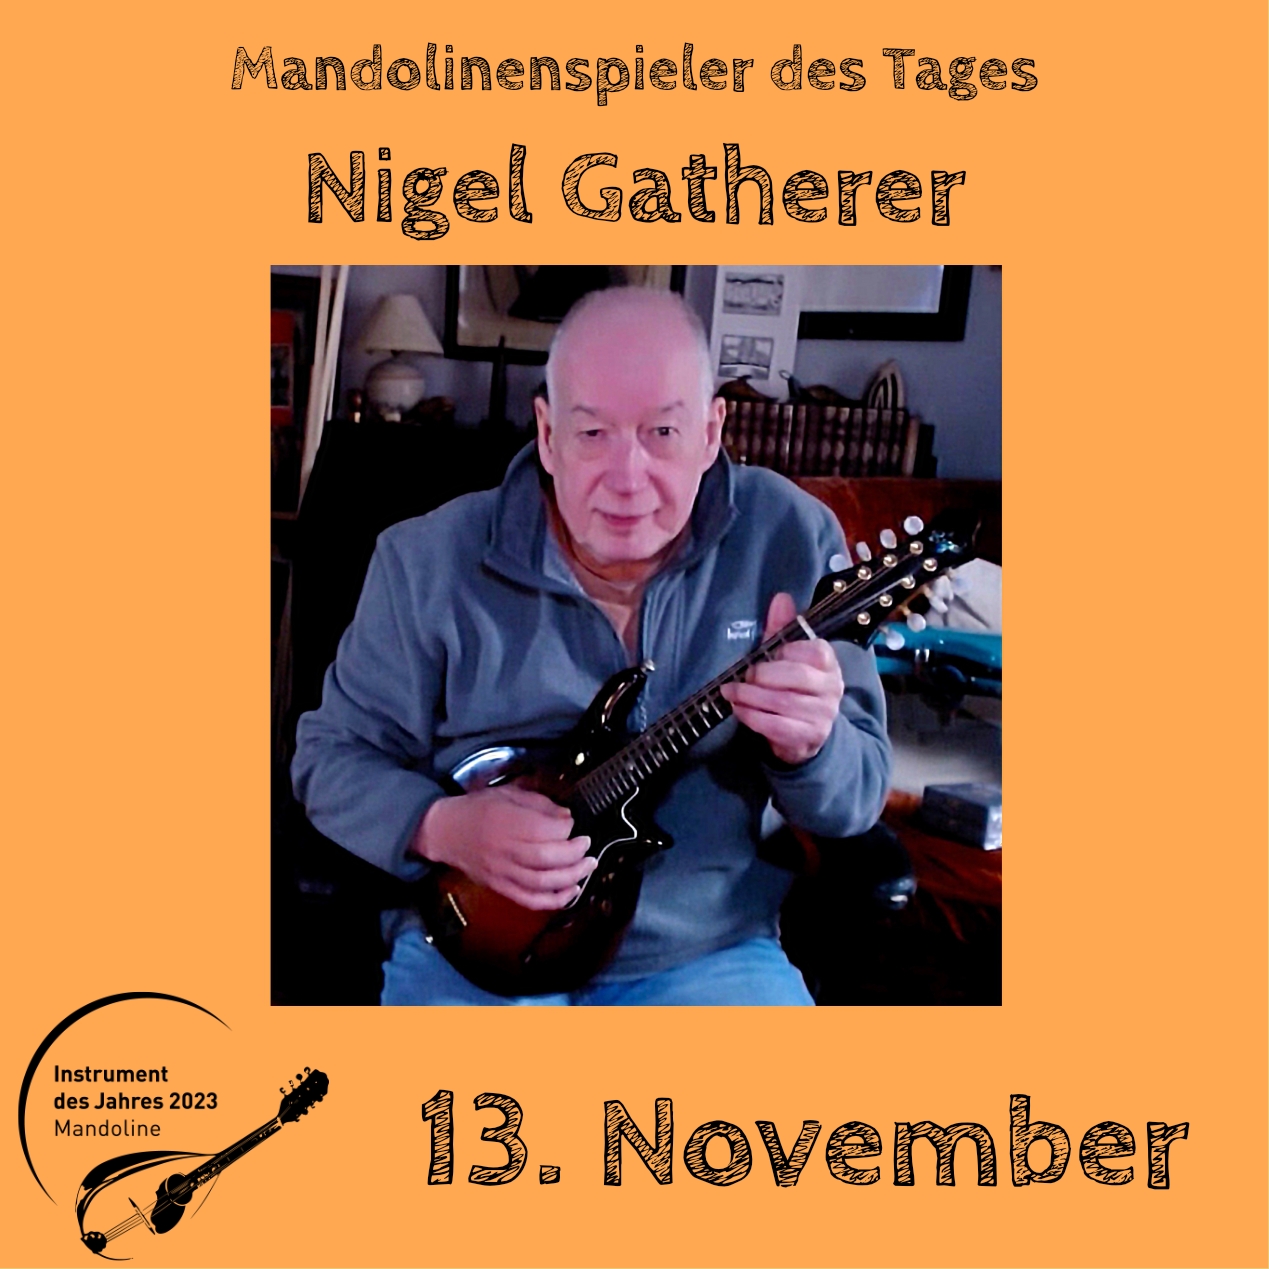 13. November - Nigel Gatherer Instrument des Jahres 2023 Mandolinenspieler Mandolinenspielerin des Tages